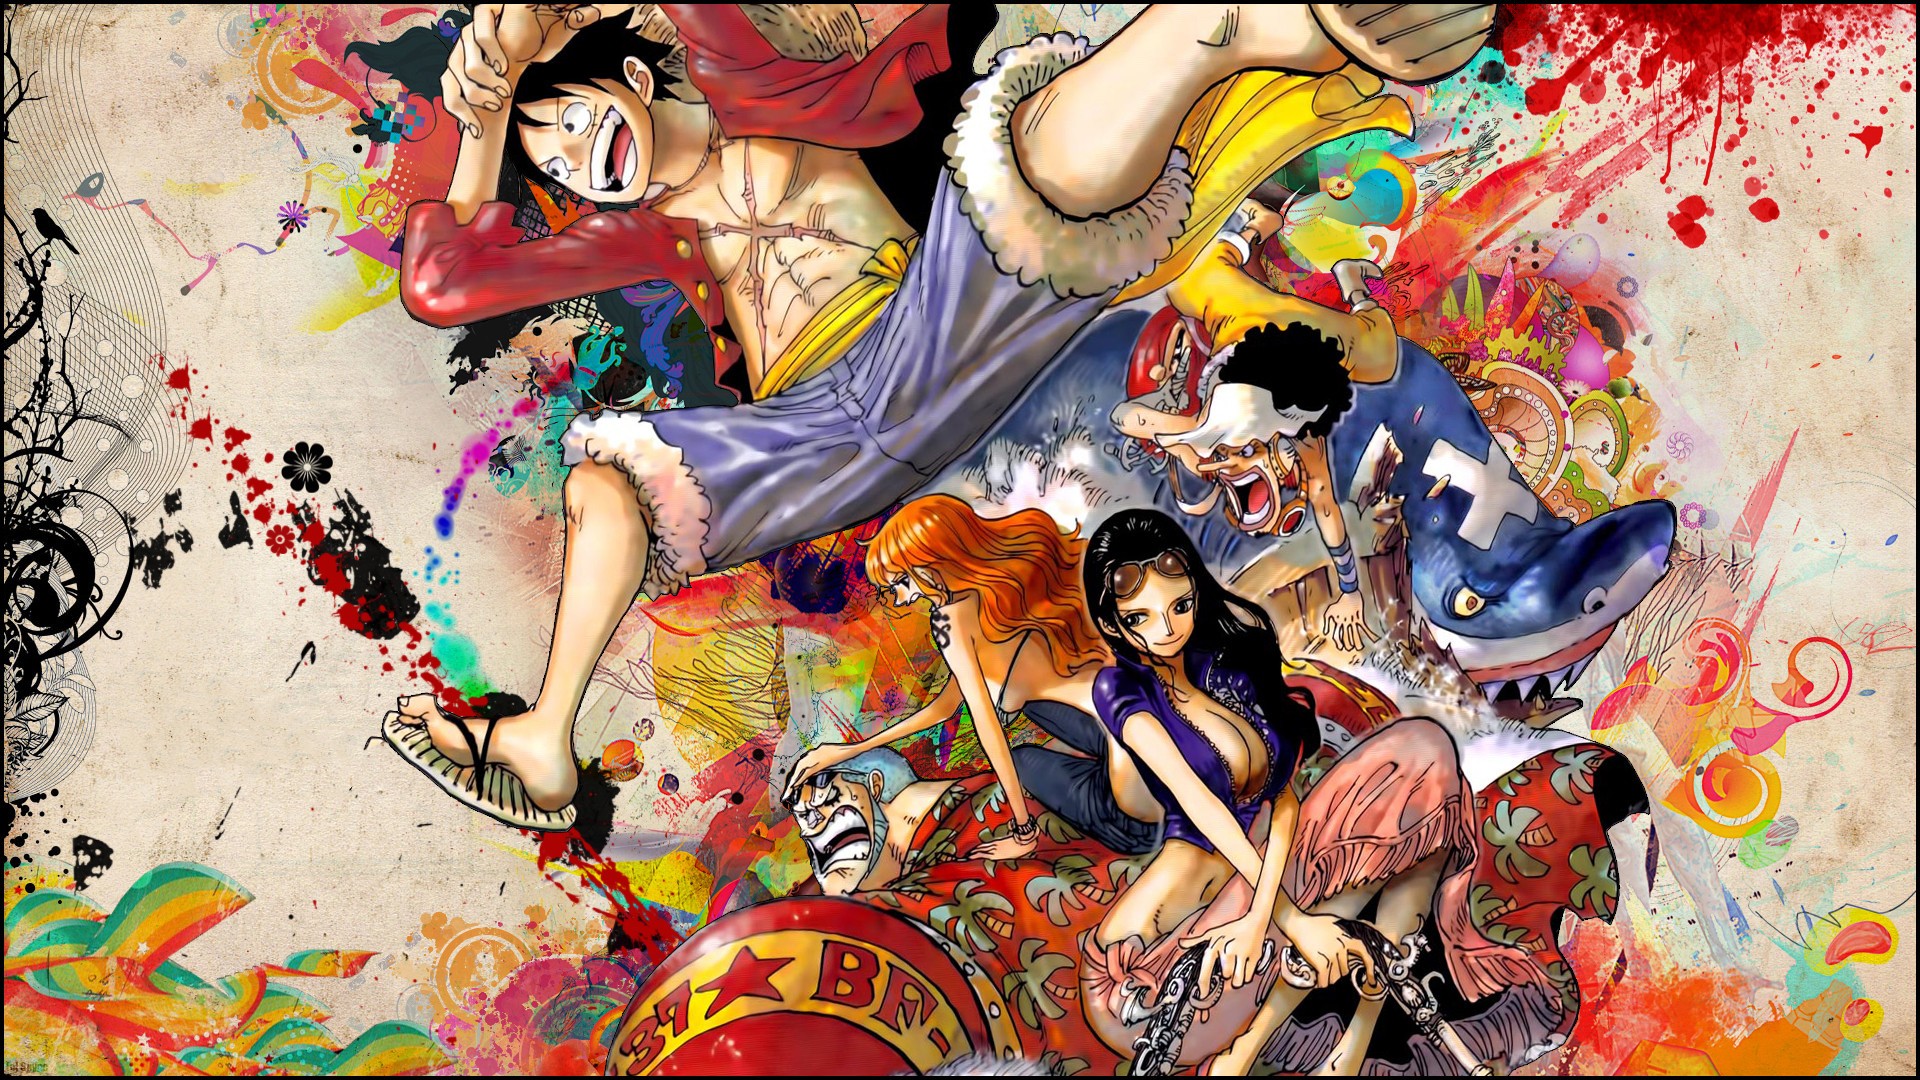 Snyp, One Piece, Monkey D. Luffy, anime boys, anime girls: Nếu bạn đang là fan cuồng của bộ truyện tranh nổi tiếng One Piece, chắc hẳn không thể bỏ qua bộ sưu tập Snyp với nhiều hình ảnh độc đáo và sinh động về những nhân vật đáng yêu như Monkey D. Luffy, và các cô gái, cậu trai nhân vật anime hấp dẫn khác nữa.